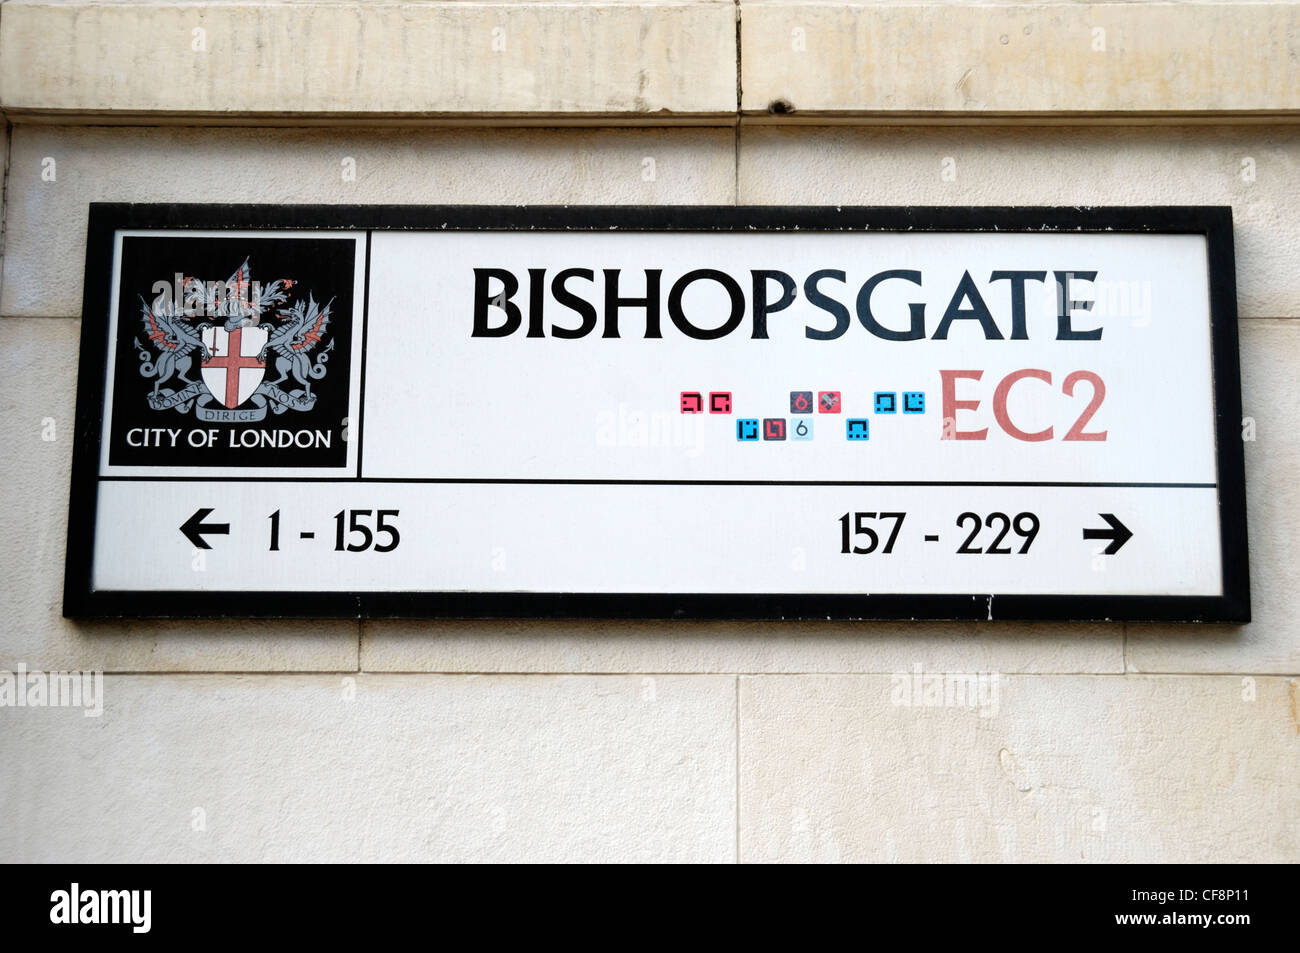 Bishopsgate EC2 street sign, Londres, Angleterre Banque D'Images